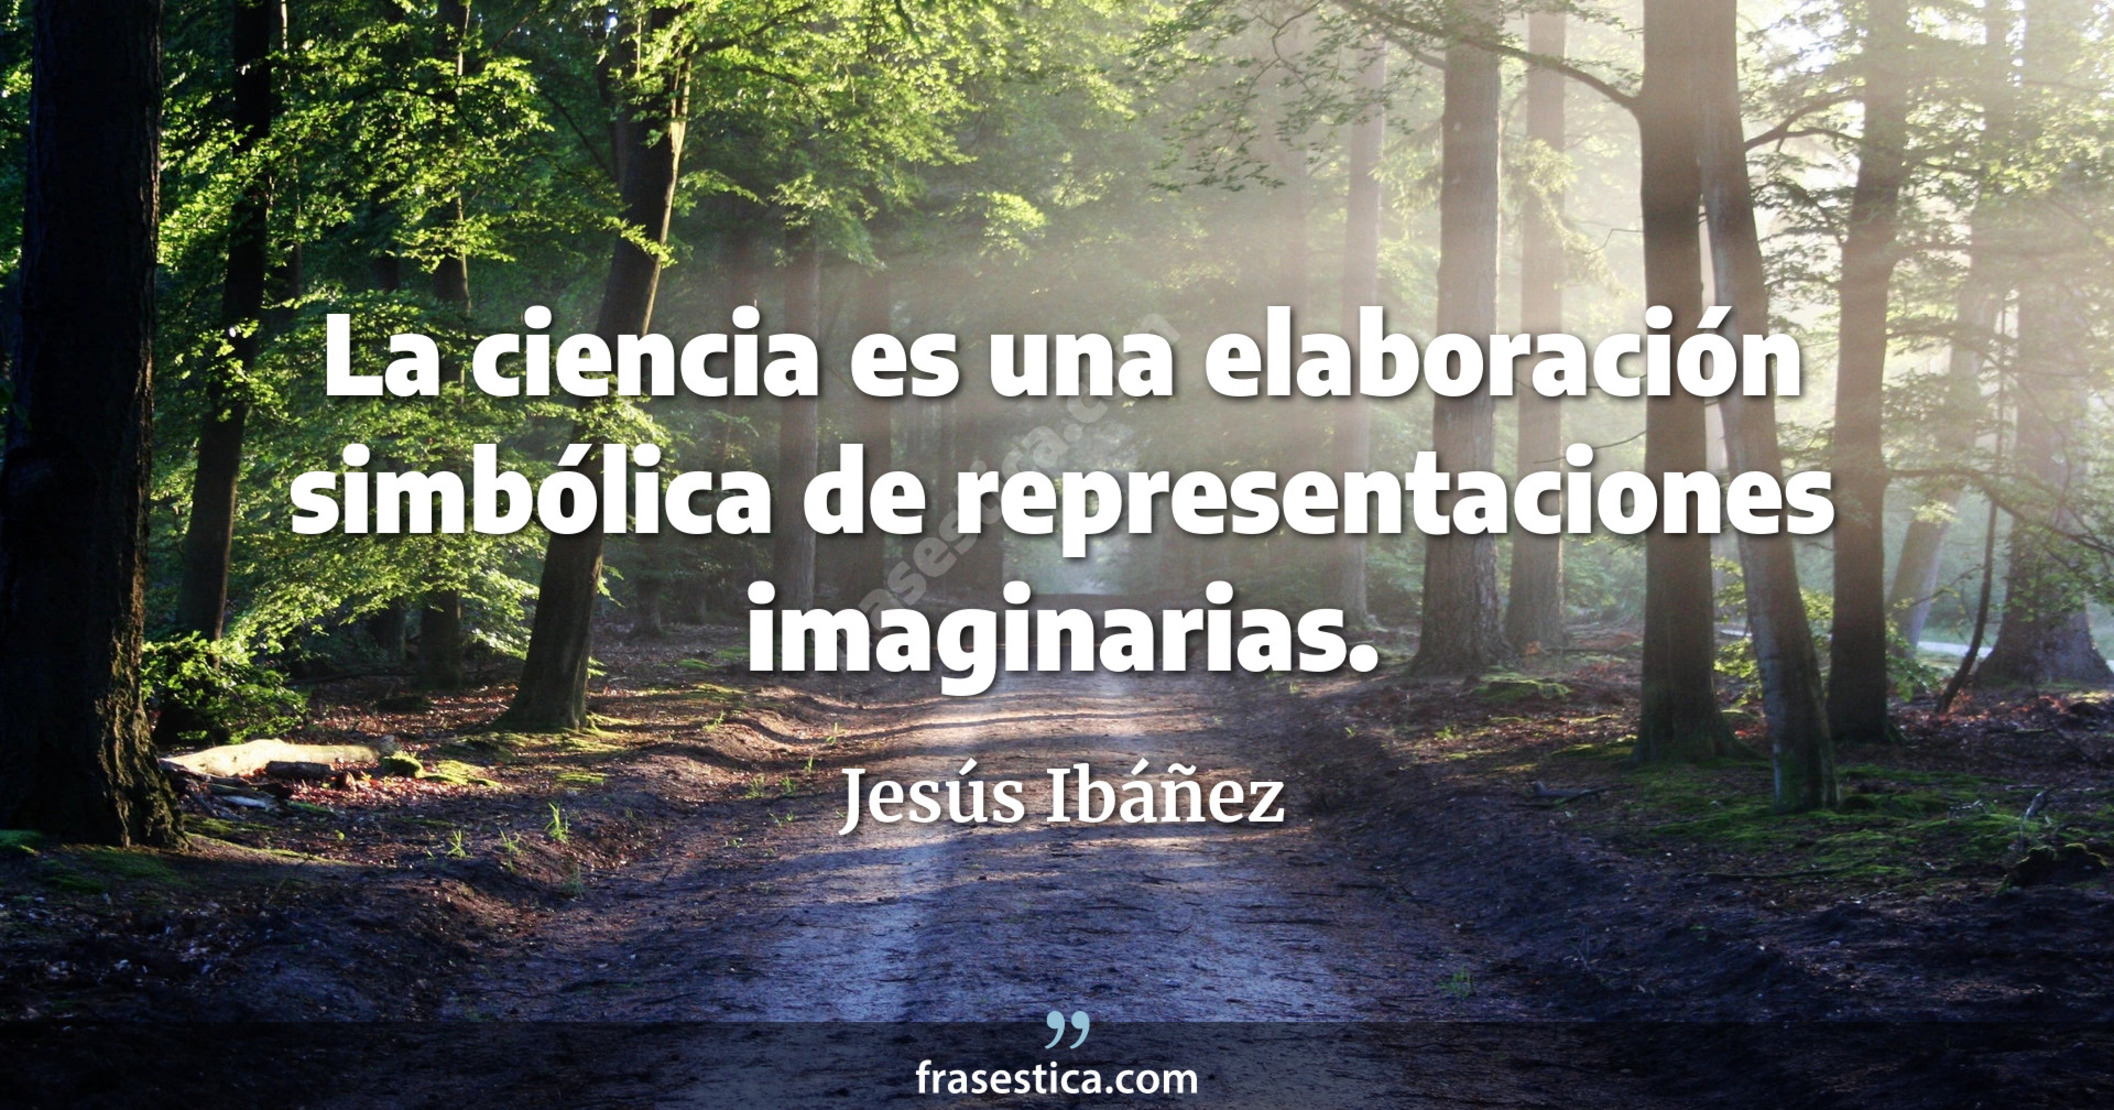 La ciencia es una elaboración simbólica de representaciones imaginarias. - Jesús Ibáñez